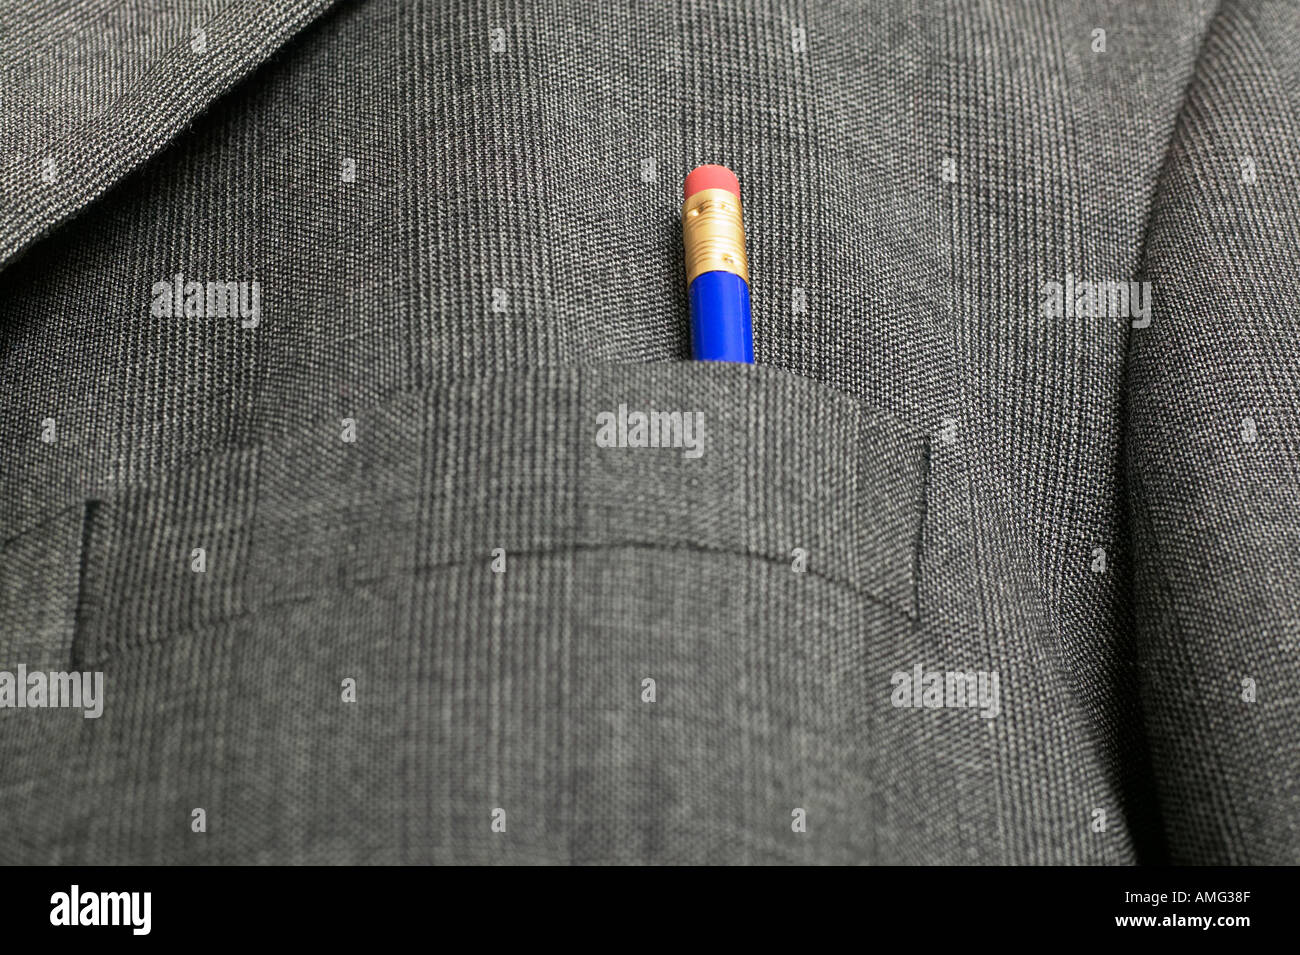 Kugelschreiber und Bleistifte in einem Anzug Tasche Stockfoto